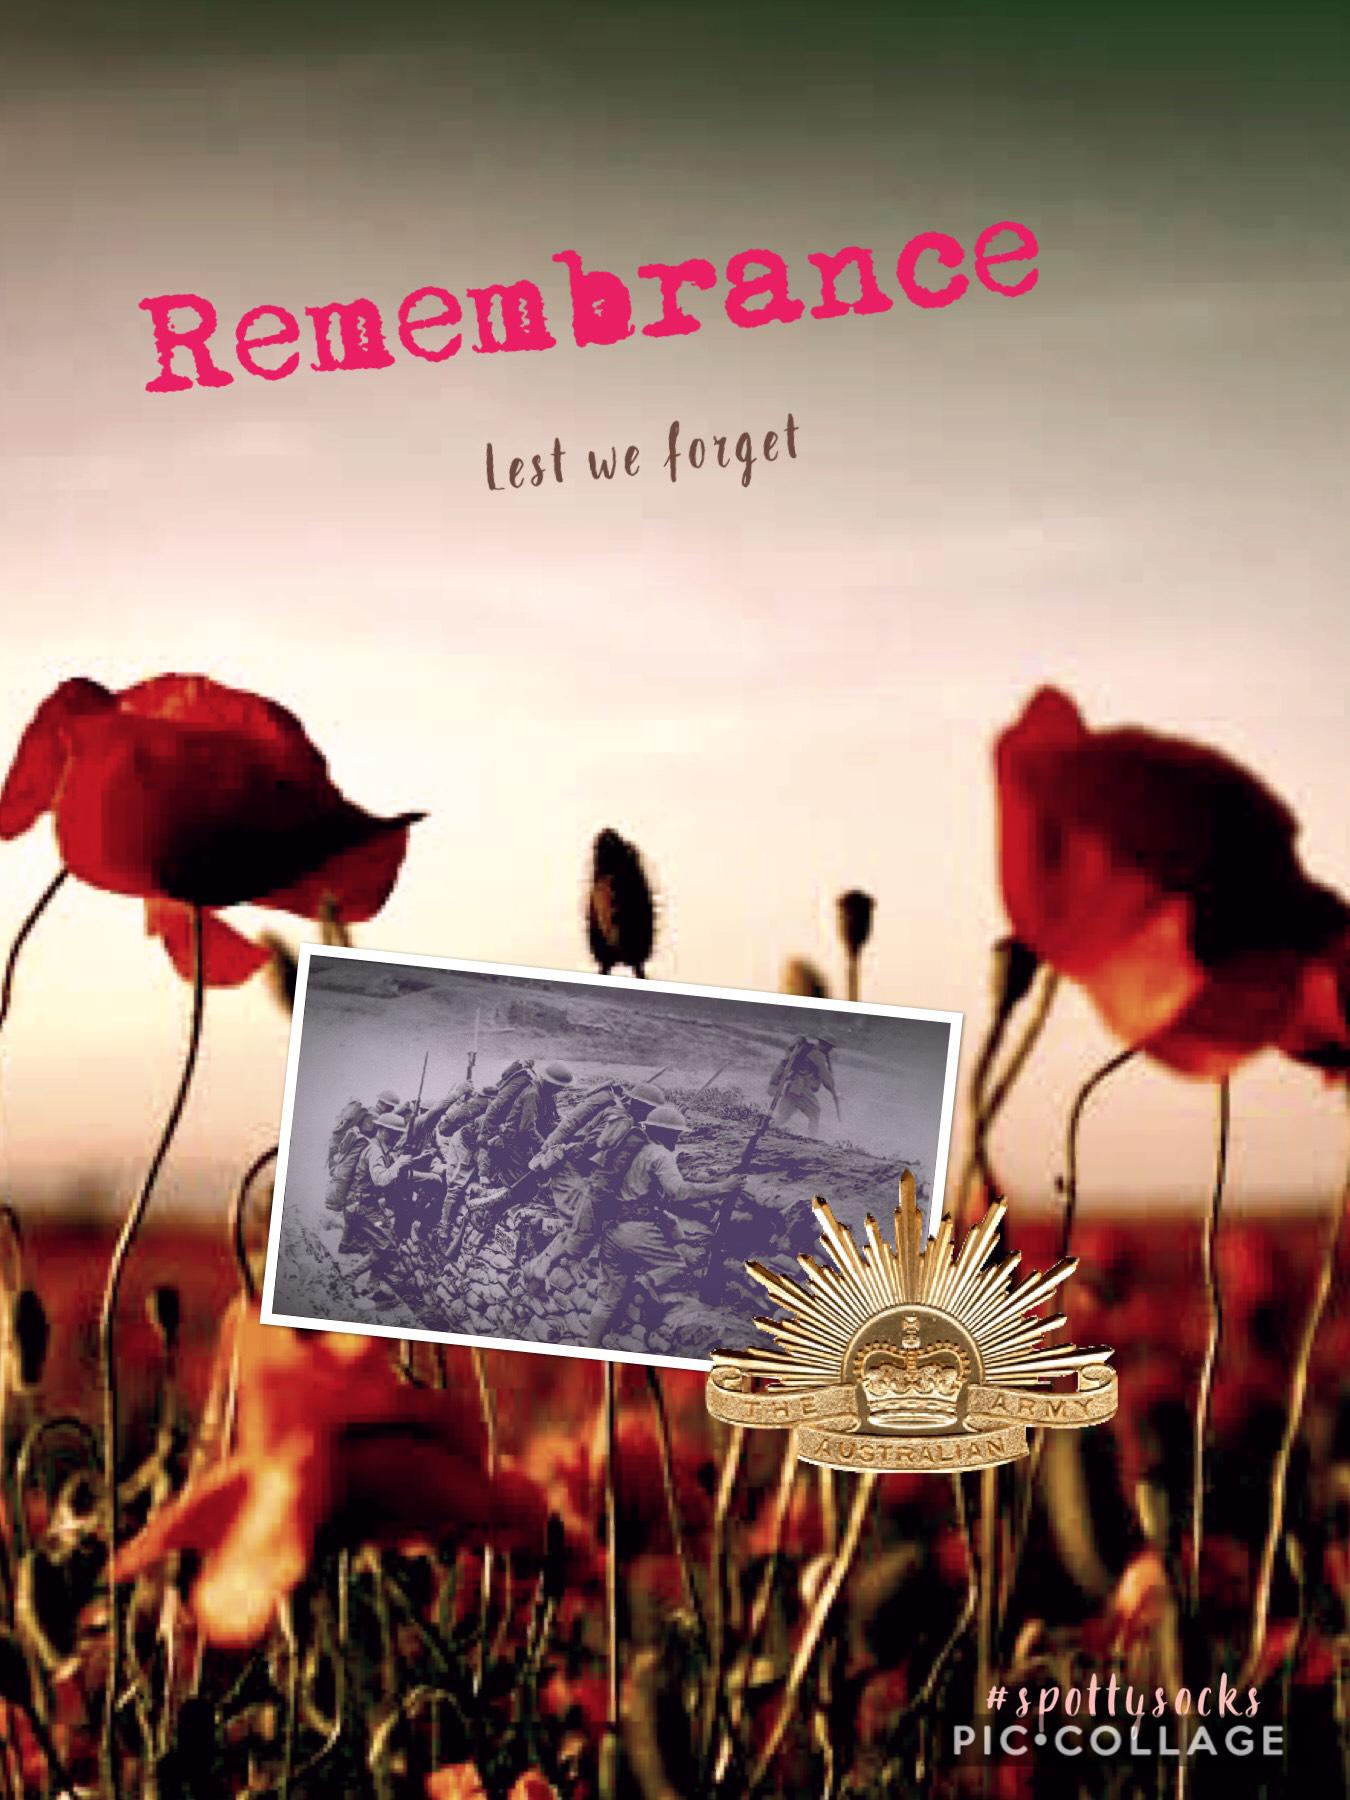 11/11 we remember 